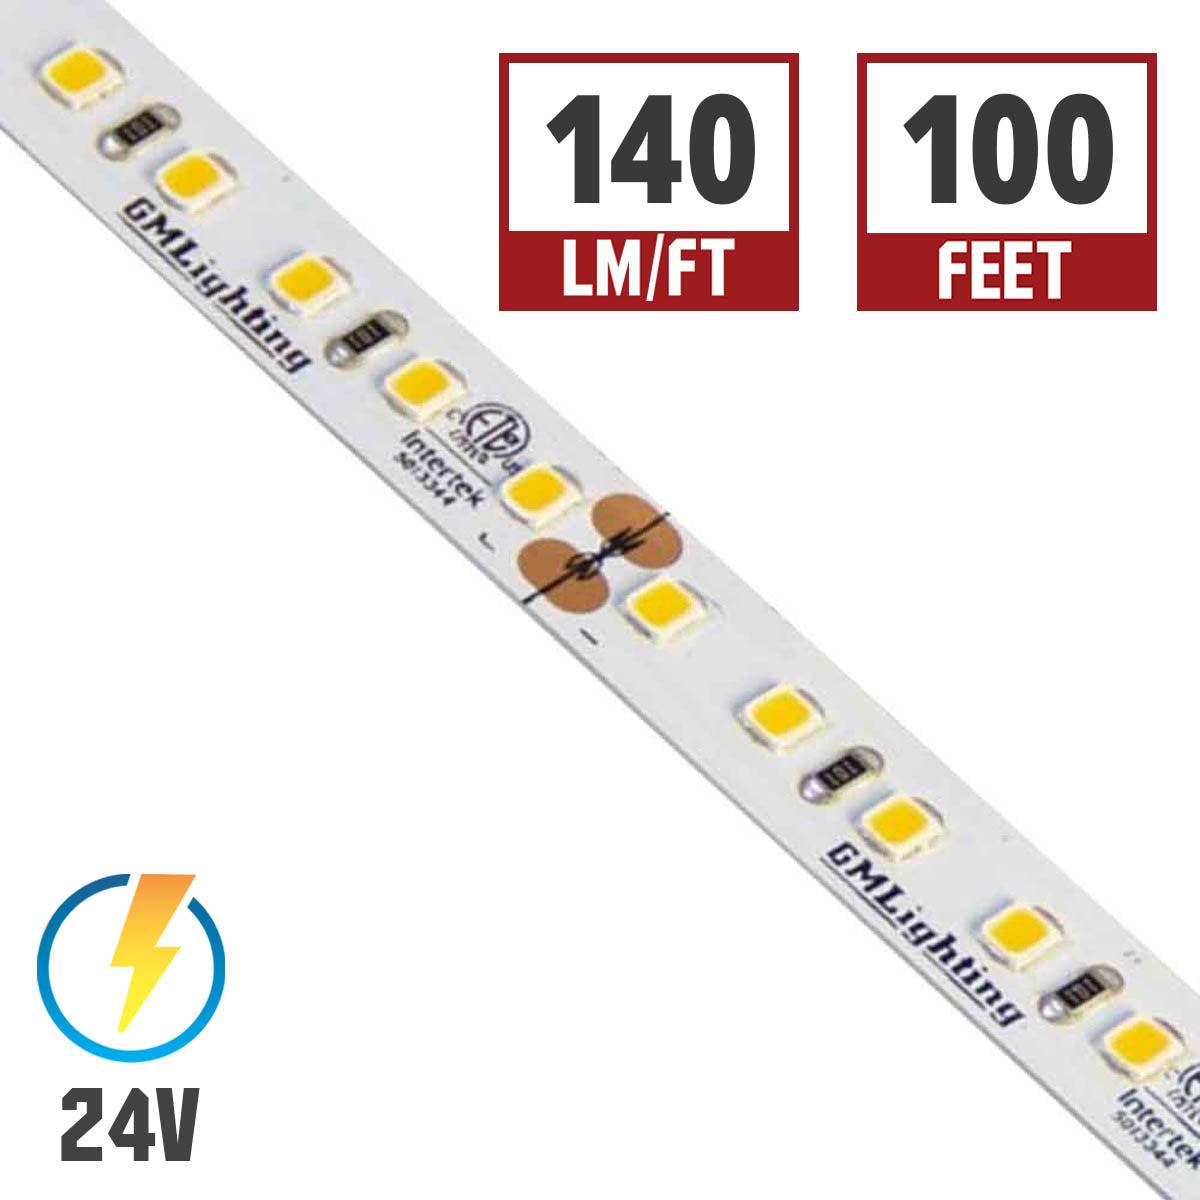 LTR-P Pro LED Strip Light, 1.5 Watts per Ft, 140 Lumens per Ft, 24V - Bees Lighting